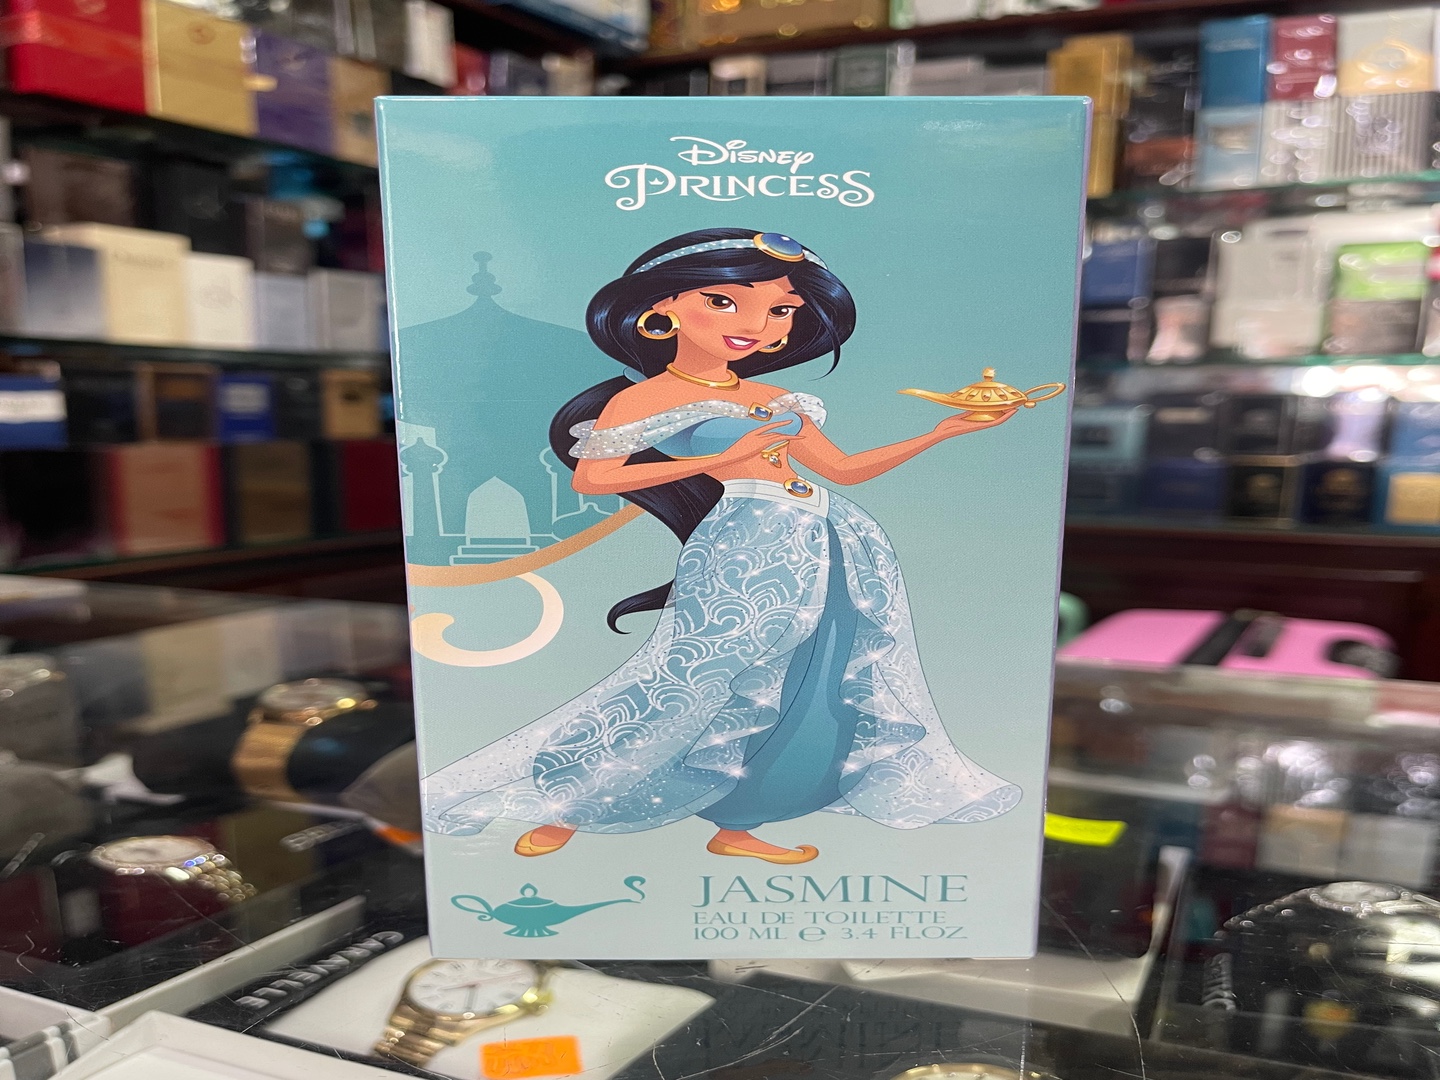 accesorios - Perfume Disney Princess “Jazmín” 3.4OZ - AL POR MAYOR Y AL DETALLE